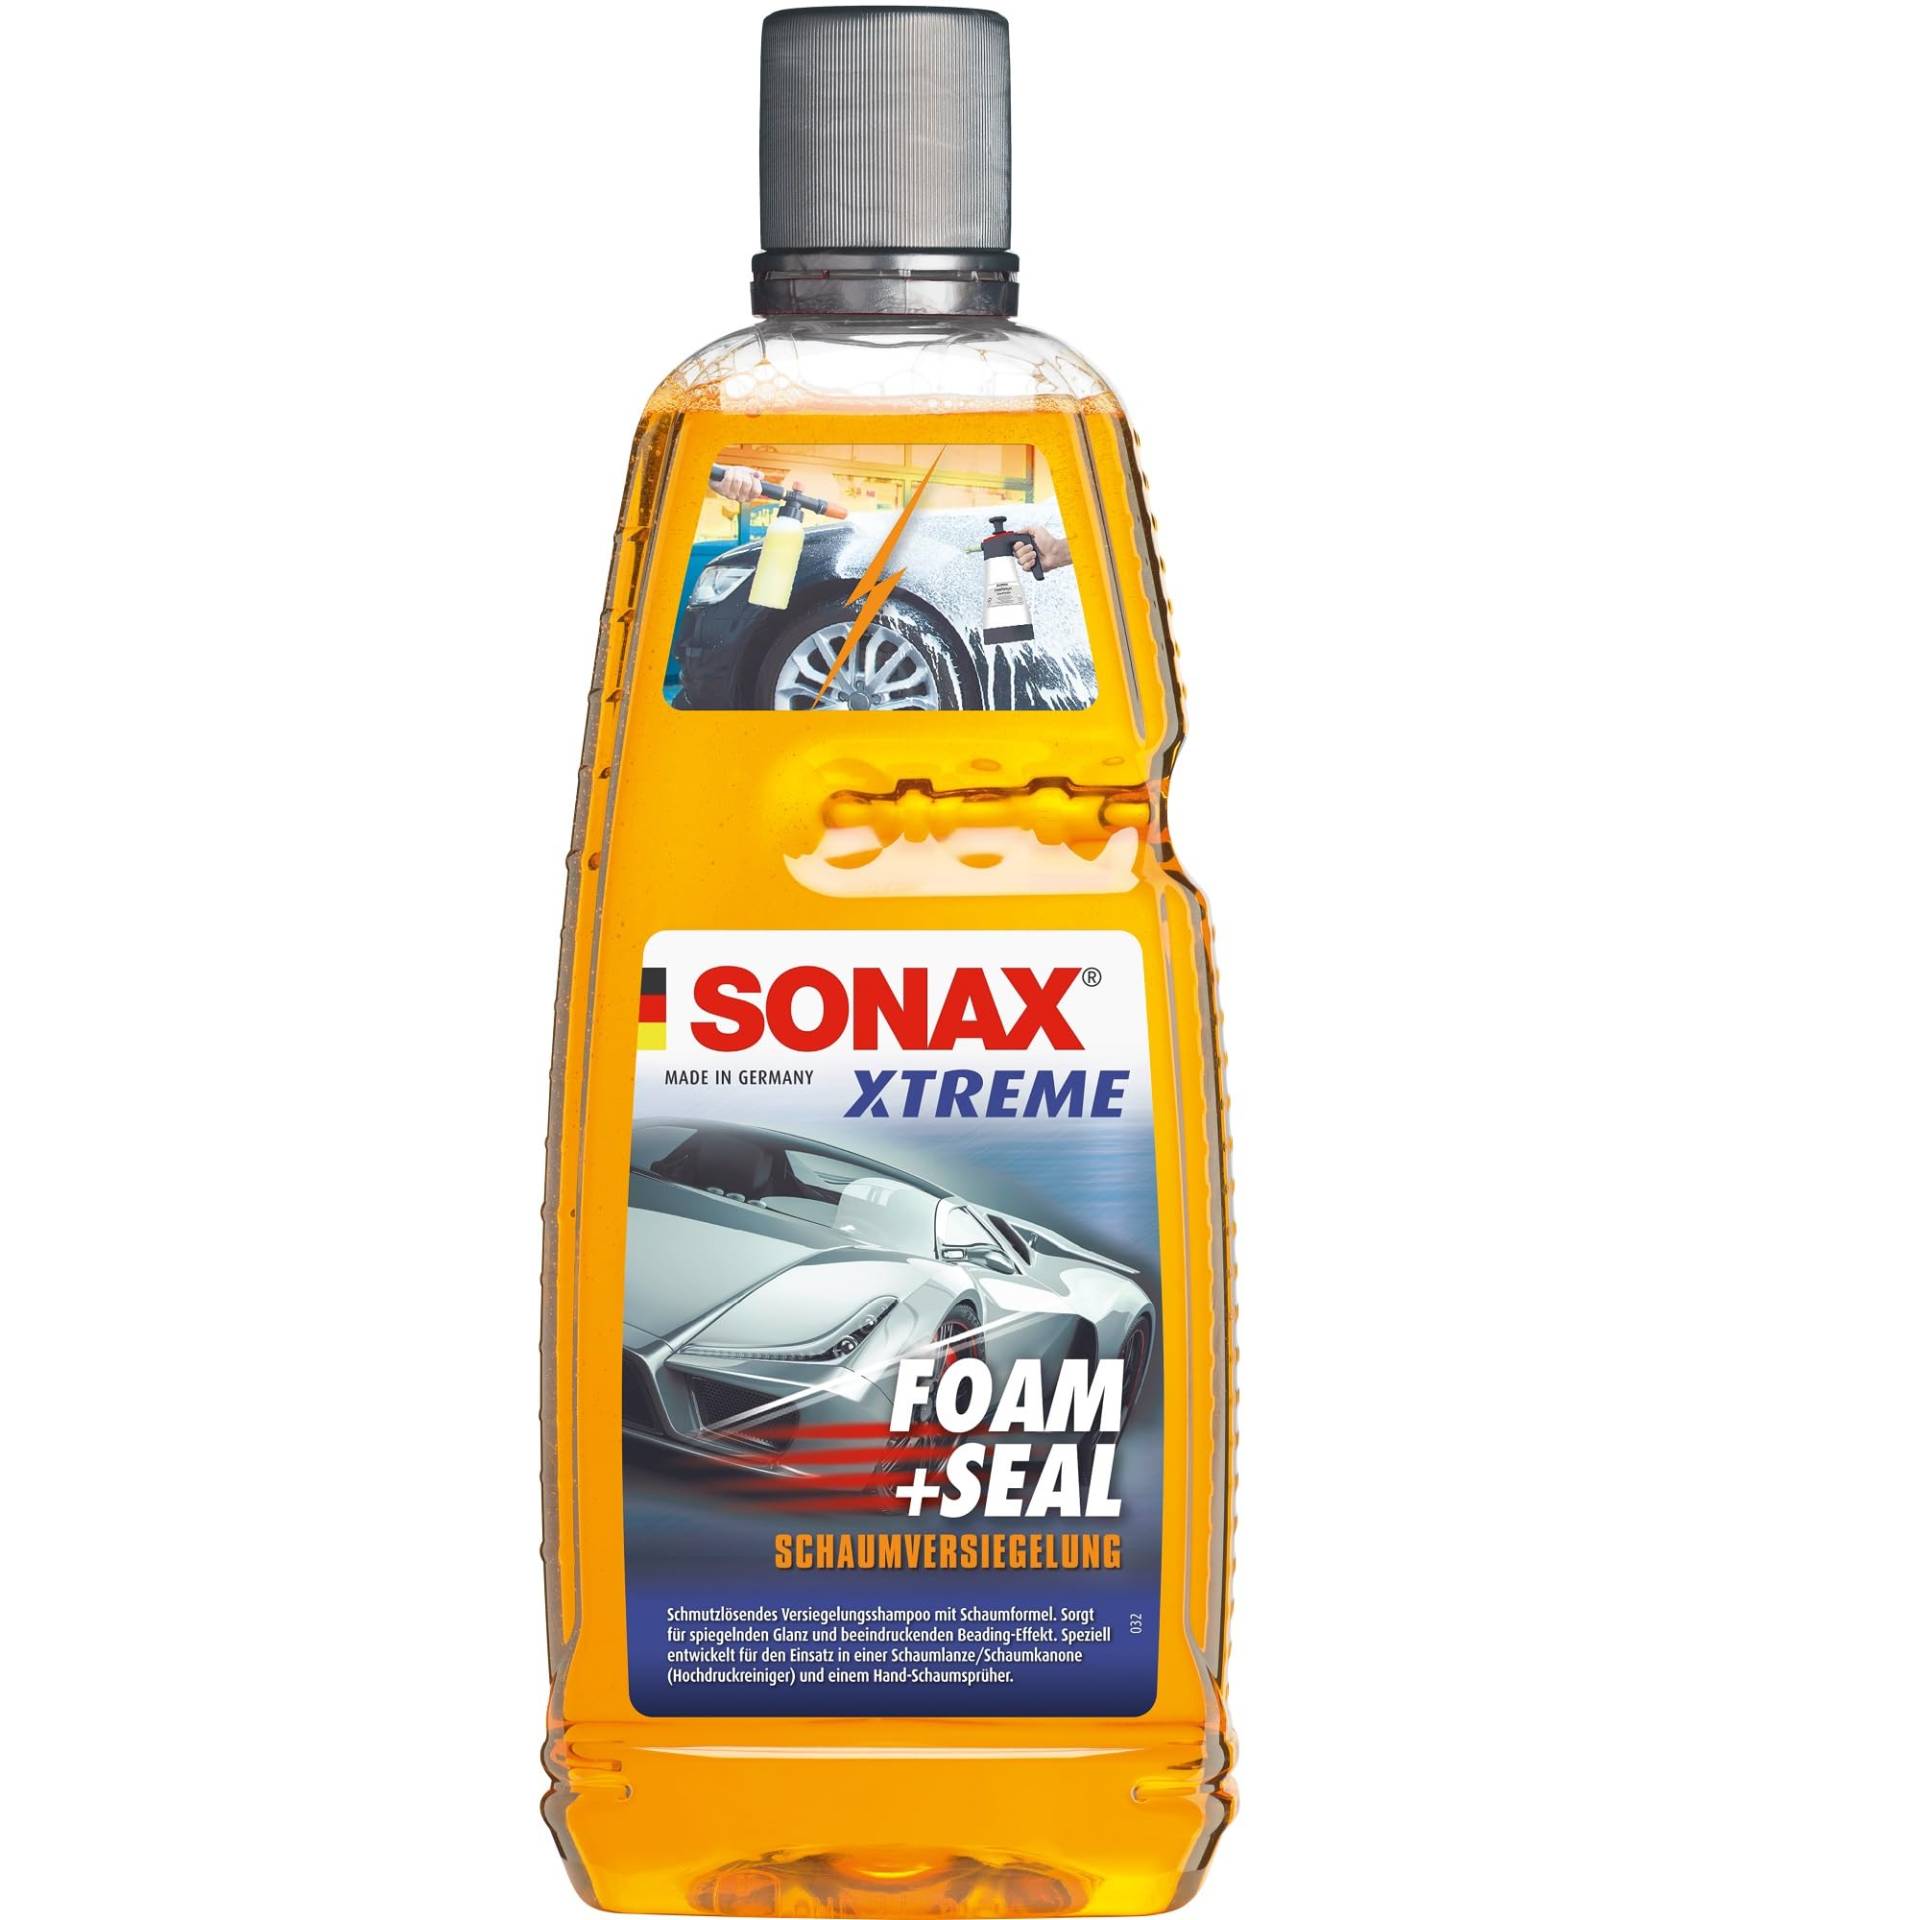 SONAX XTREME Foam+Seal (1 Liter) schmutzlösendes Versiegelungsshampoo mit Schaumformel, gibt maximalen Glanz zurück & frischt vorhandene Versiegelungen auf | Art-Nr. 02513000 von SONAX